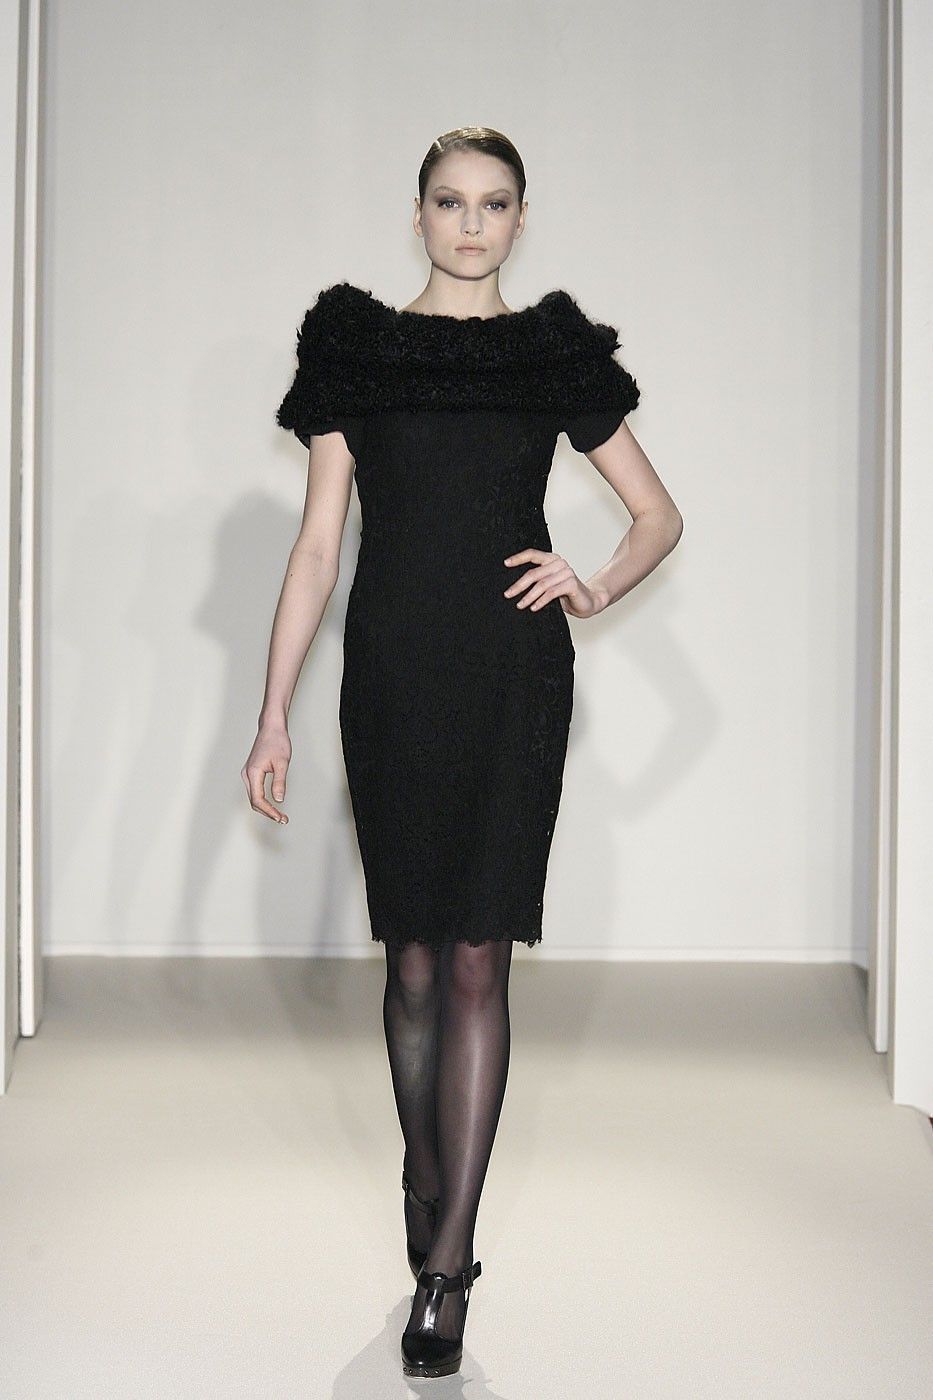 Dress, Sleeve, Shoulder, Human leg, Joint, One-piece garment, Standing, Waist, Style, Cocktail dress, 